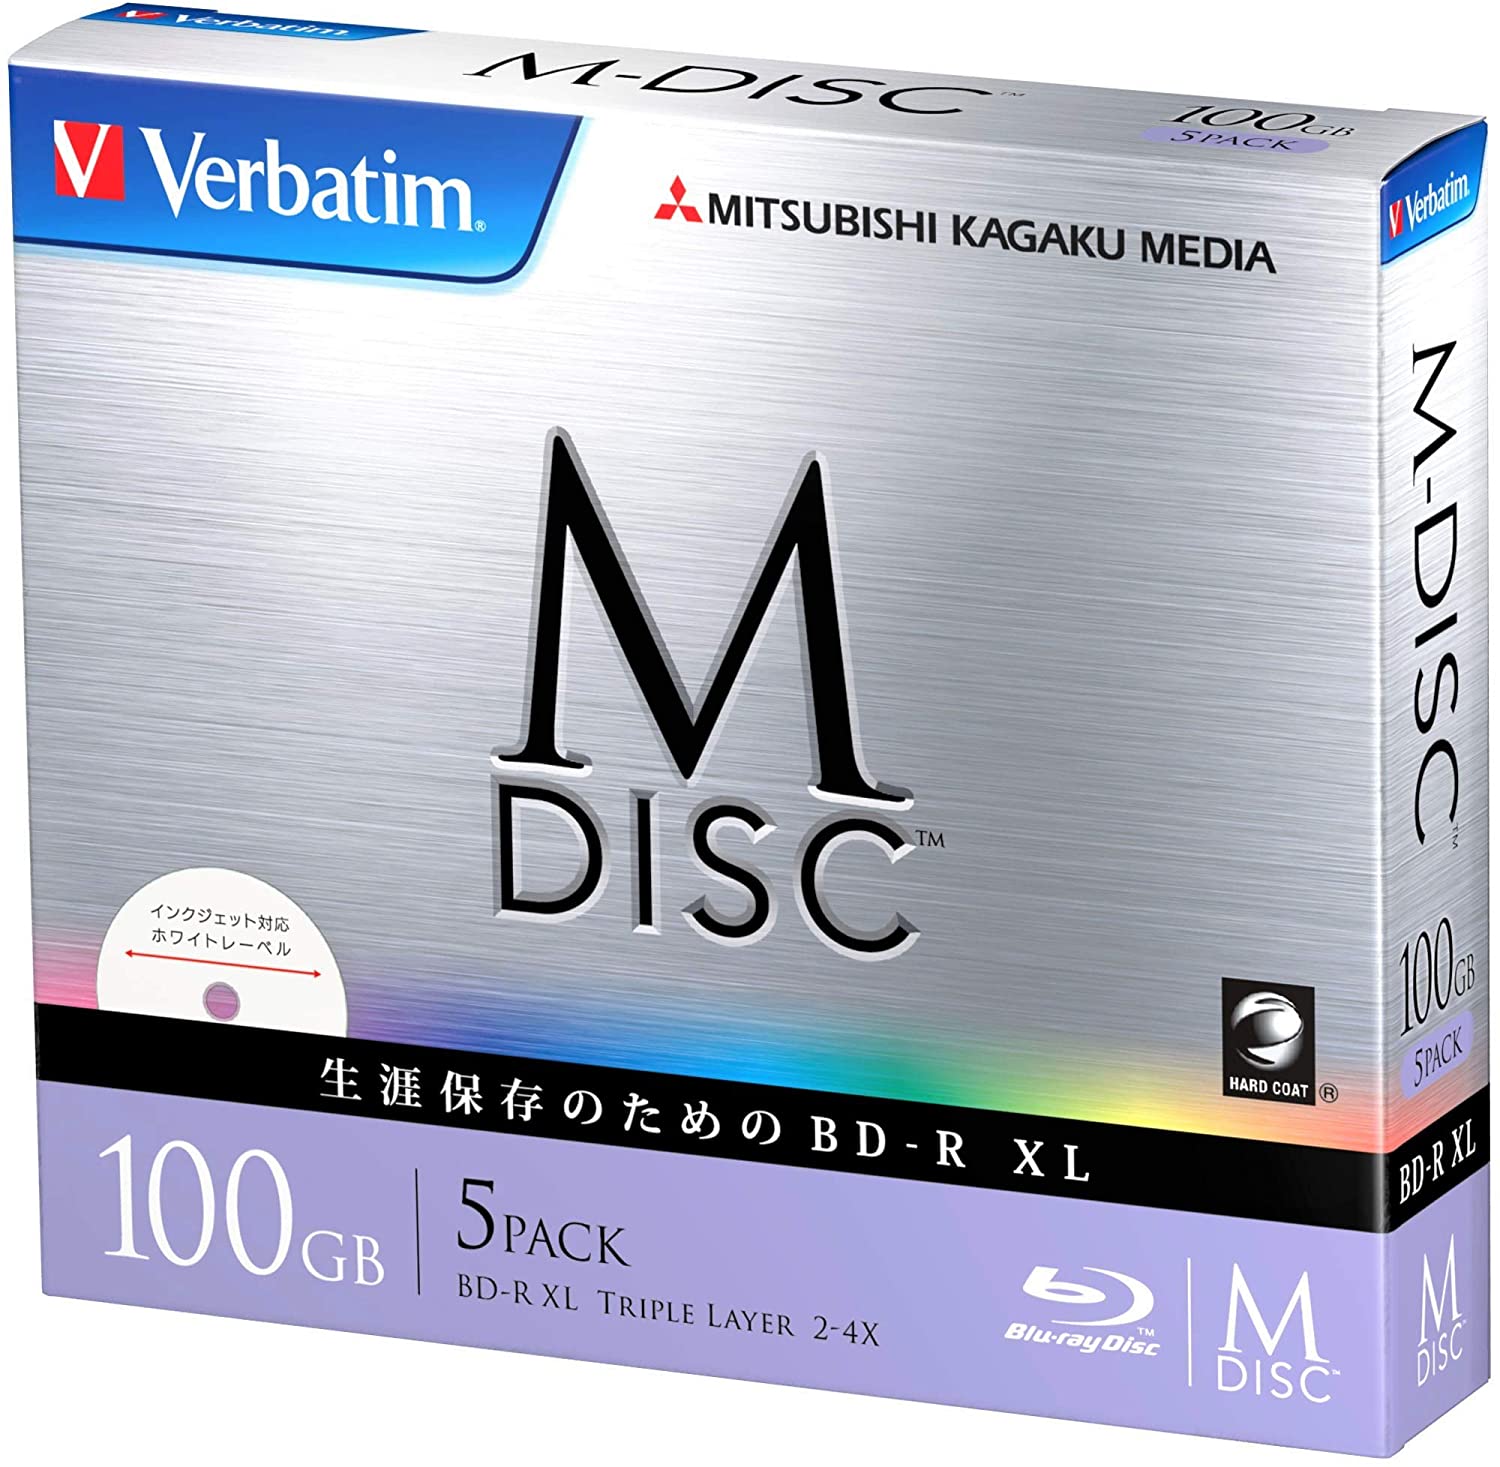 M-DISCはデータを長期保存できる